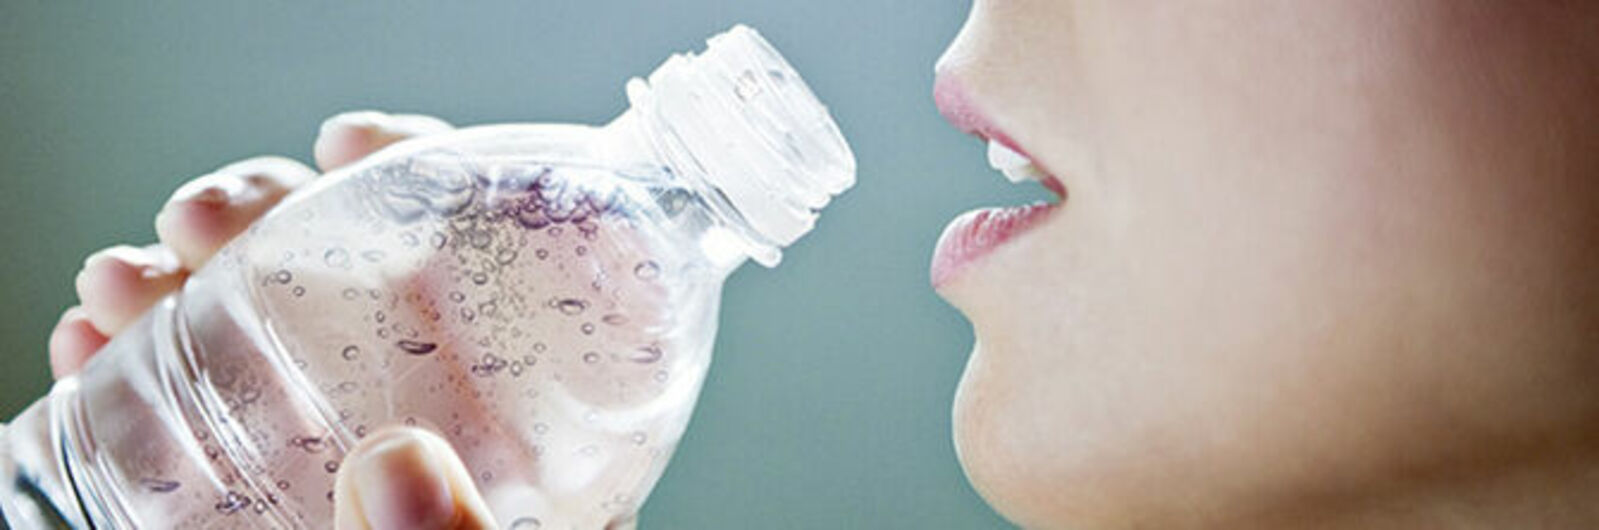 Eine Frau trinkt aus einer Wasserflasche